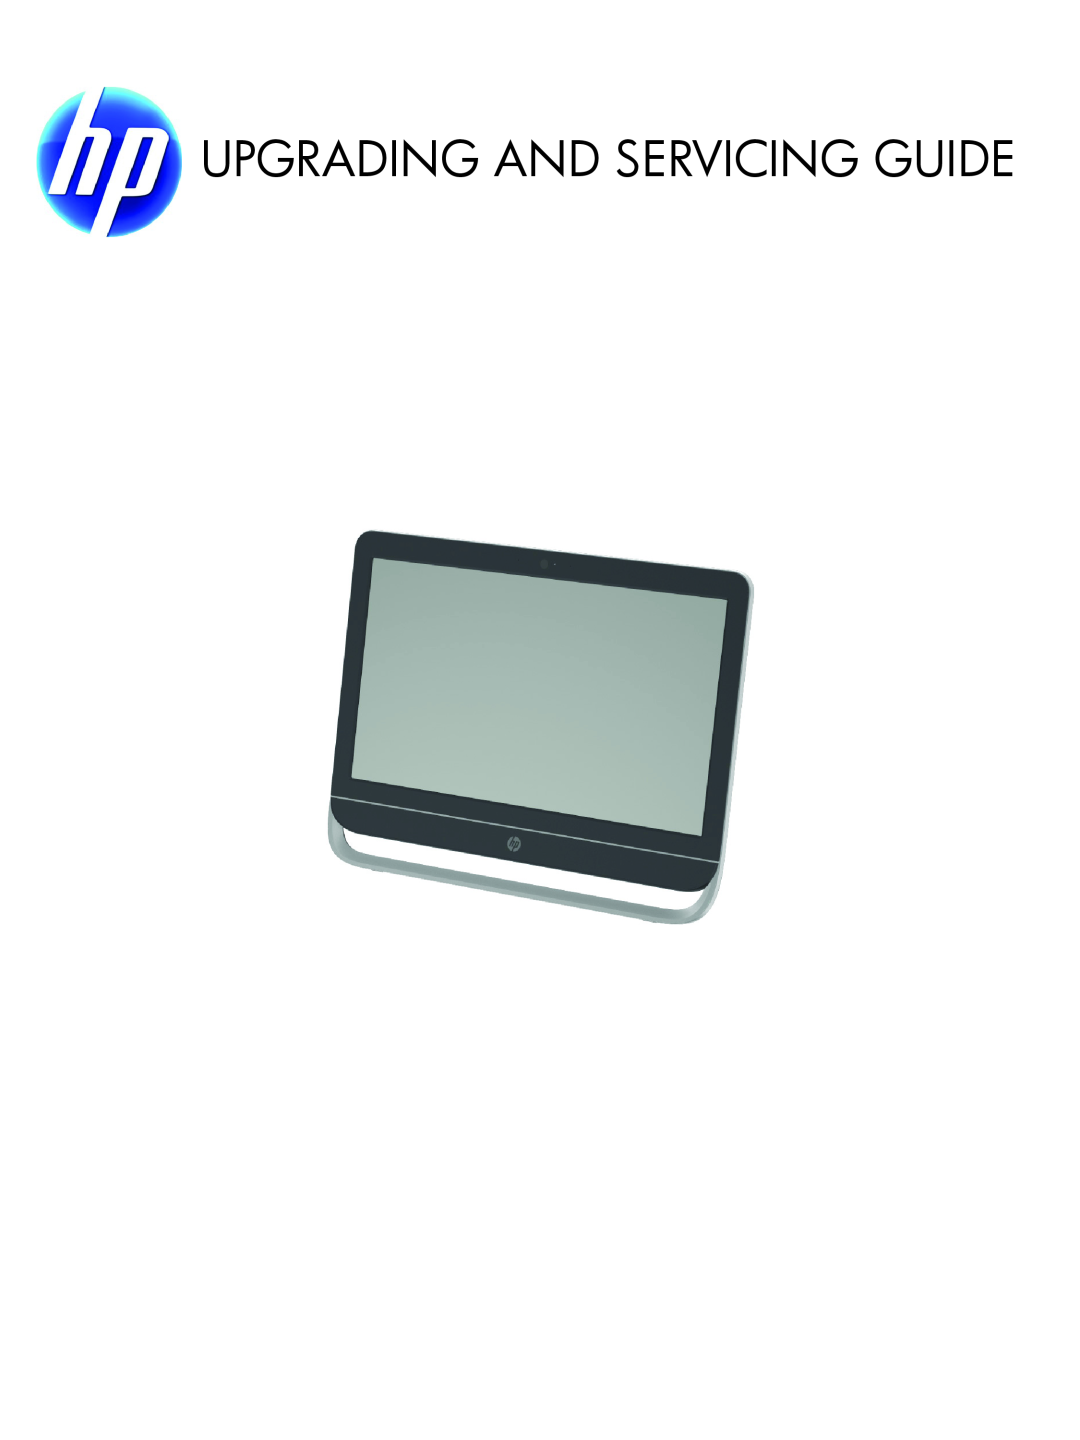 HP 23-b364, 23-b396, 23-b329c, 23-b320, 23-b309, 23-b244, 23-b319, 23-b239, 23-b241, 23-b232 manual Upgrading And Servicing Guide 